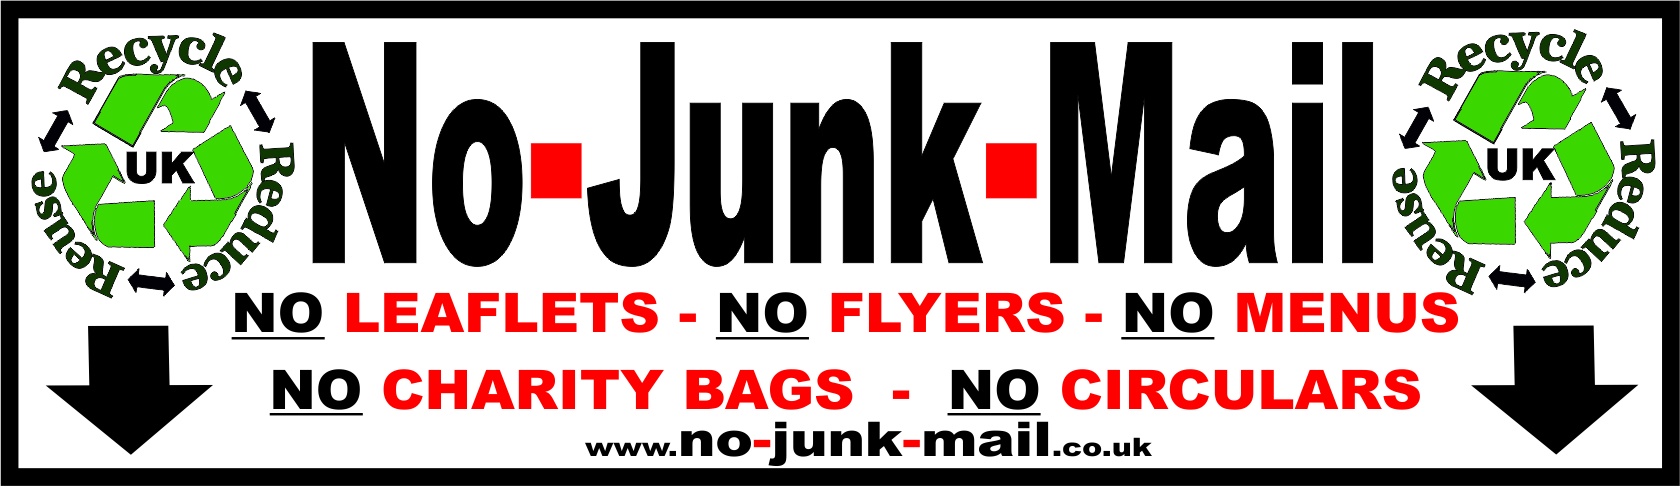 No Junk Mail Sign, No Junk Mail Sticker, Junk Mail Sign, Junk Mail Sticker, Stops Junk Mail, No Junk Mail Letterbox Sticker by www.no-junk-mail.co.uk